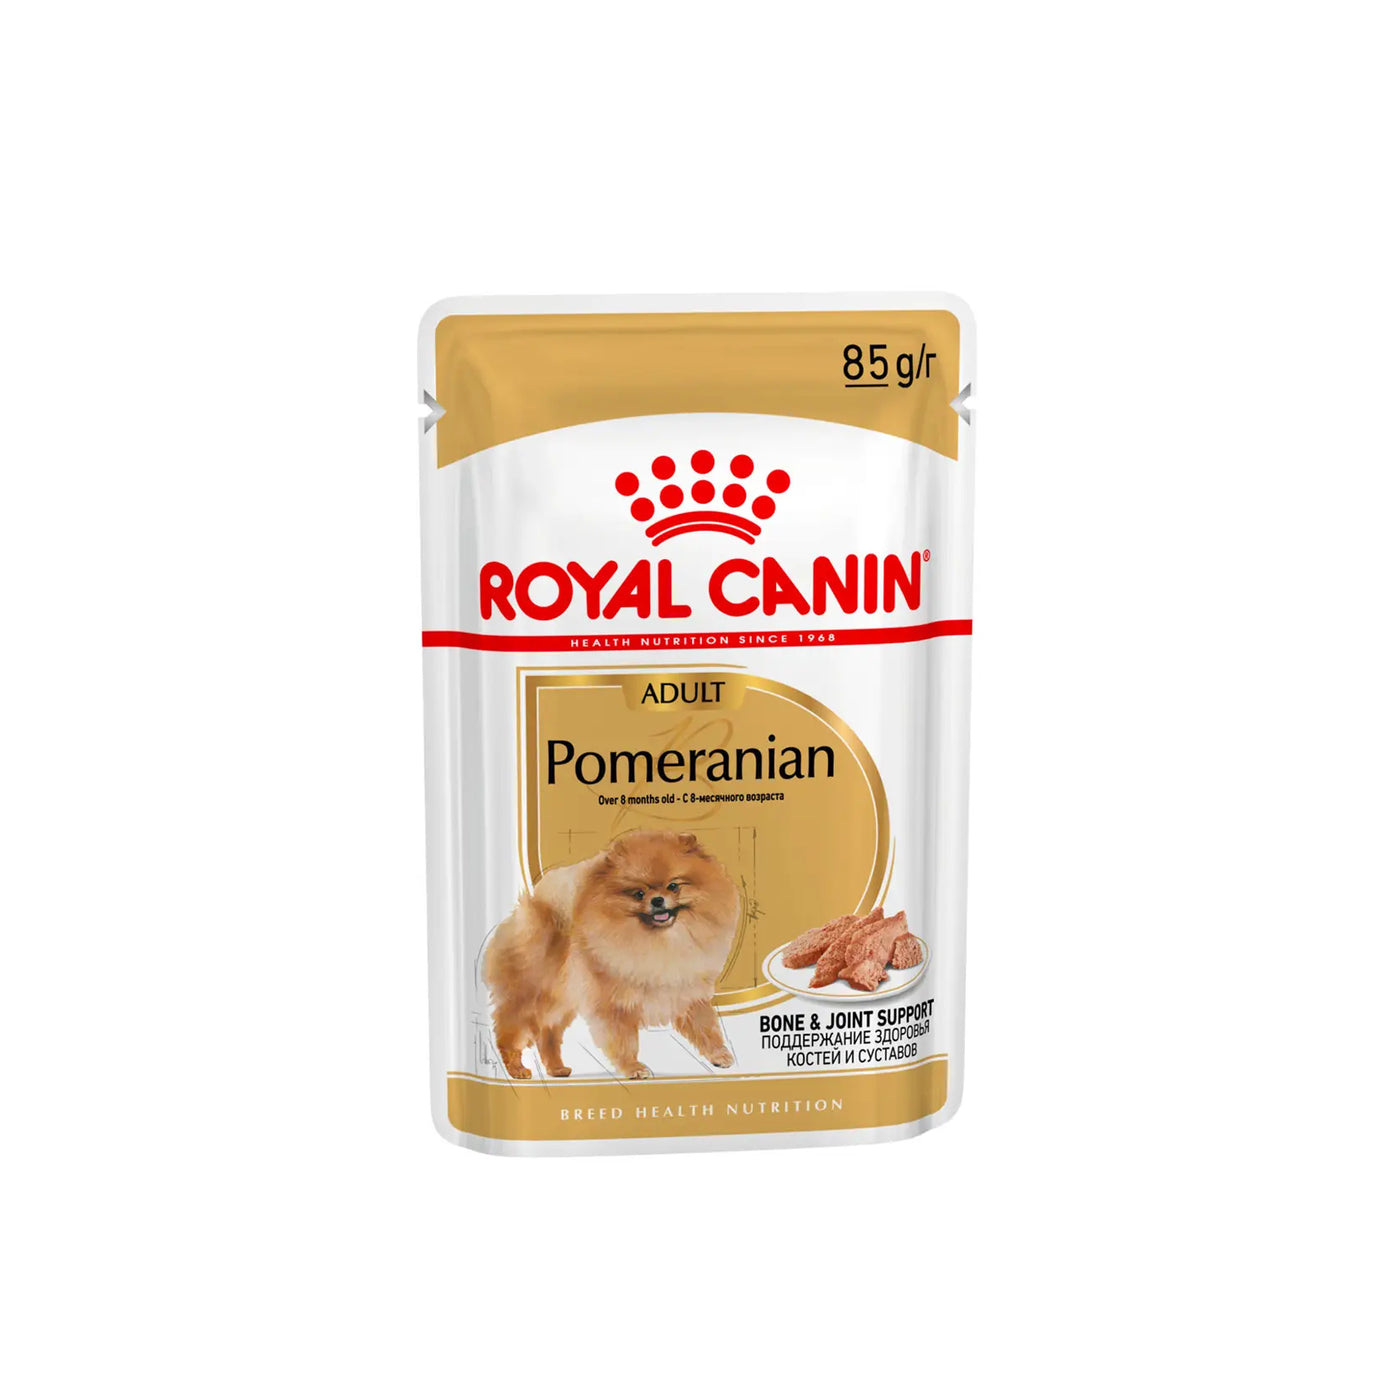 Royal Canin - Adult Pomeranian Loaf Wet Food 85g